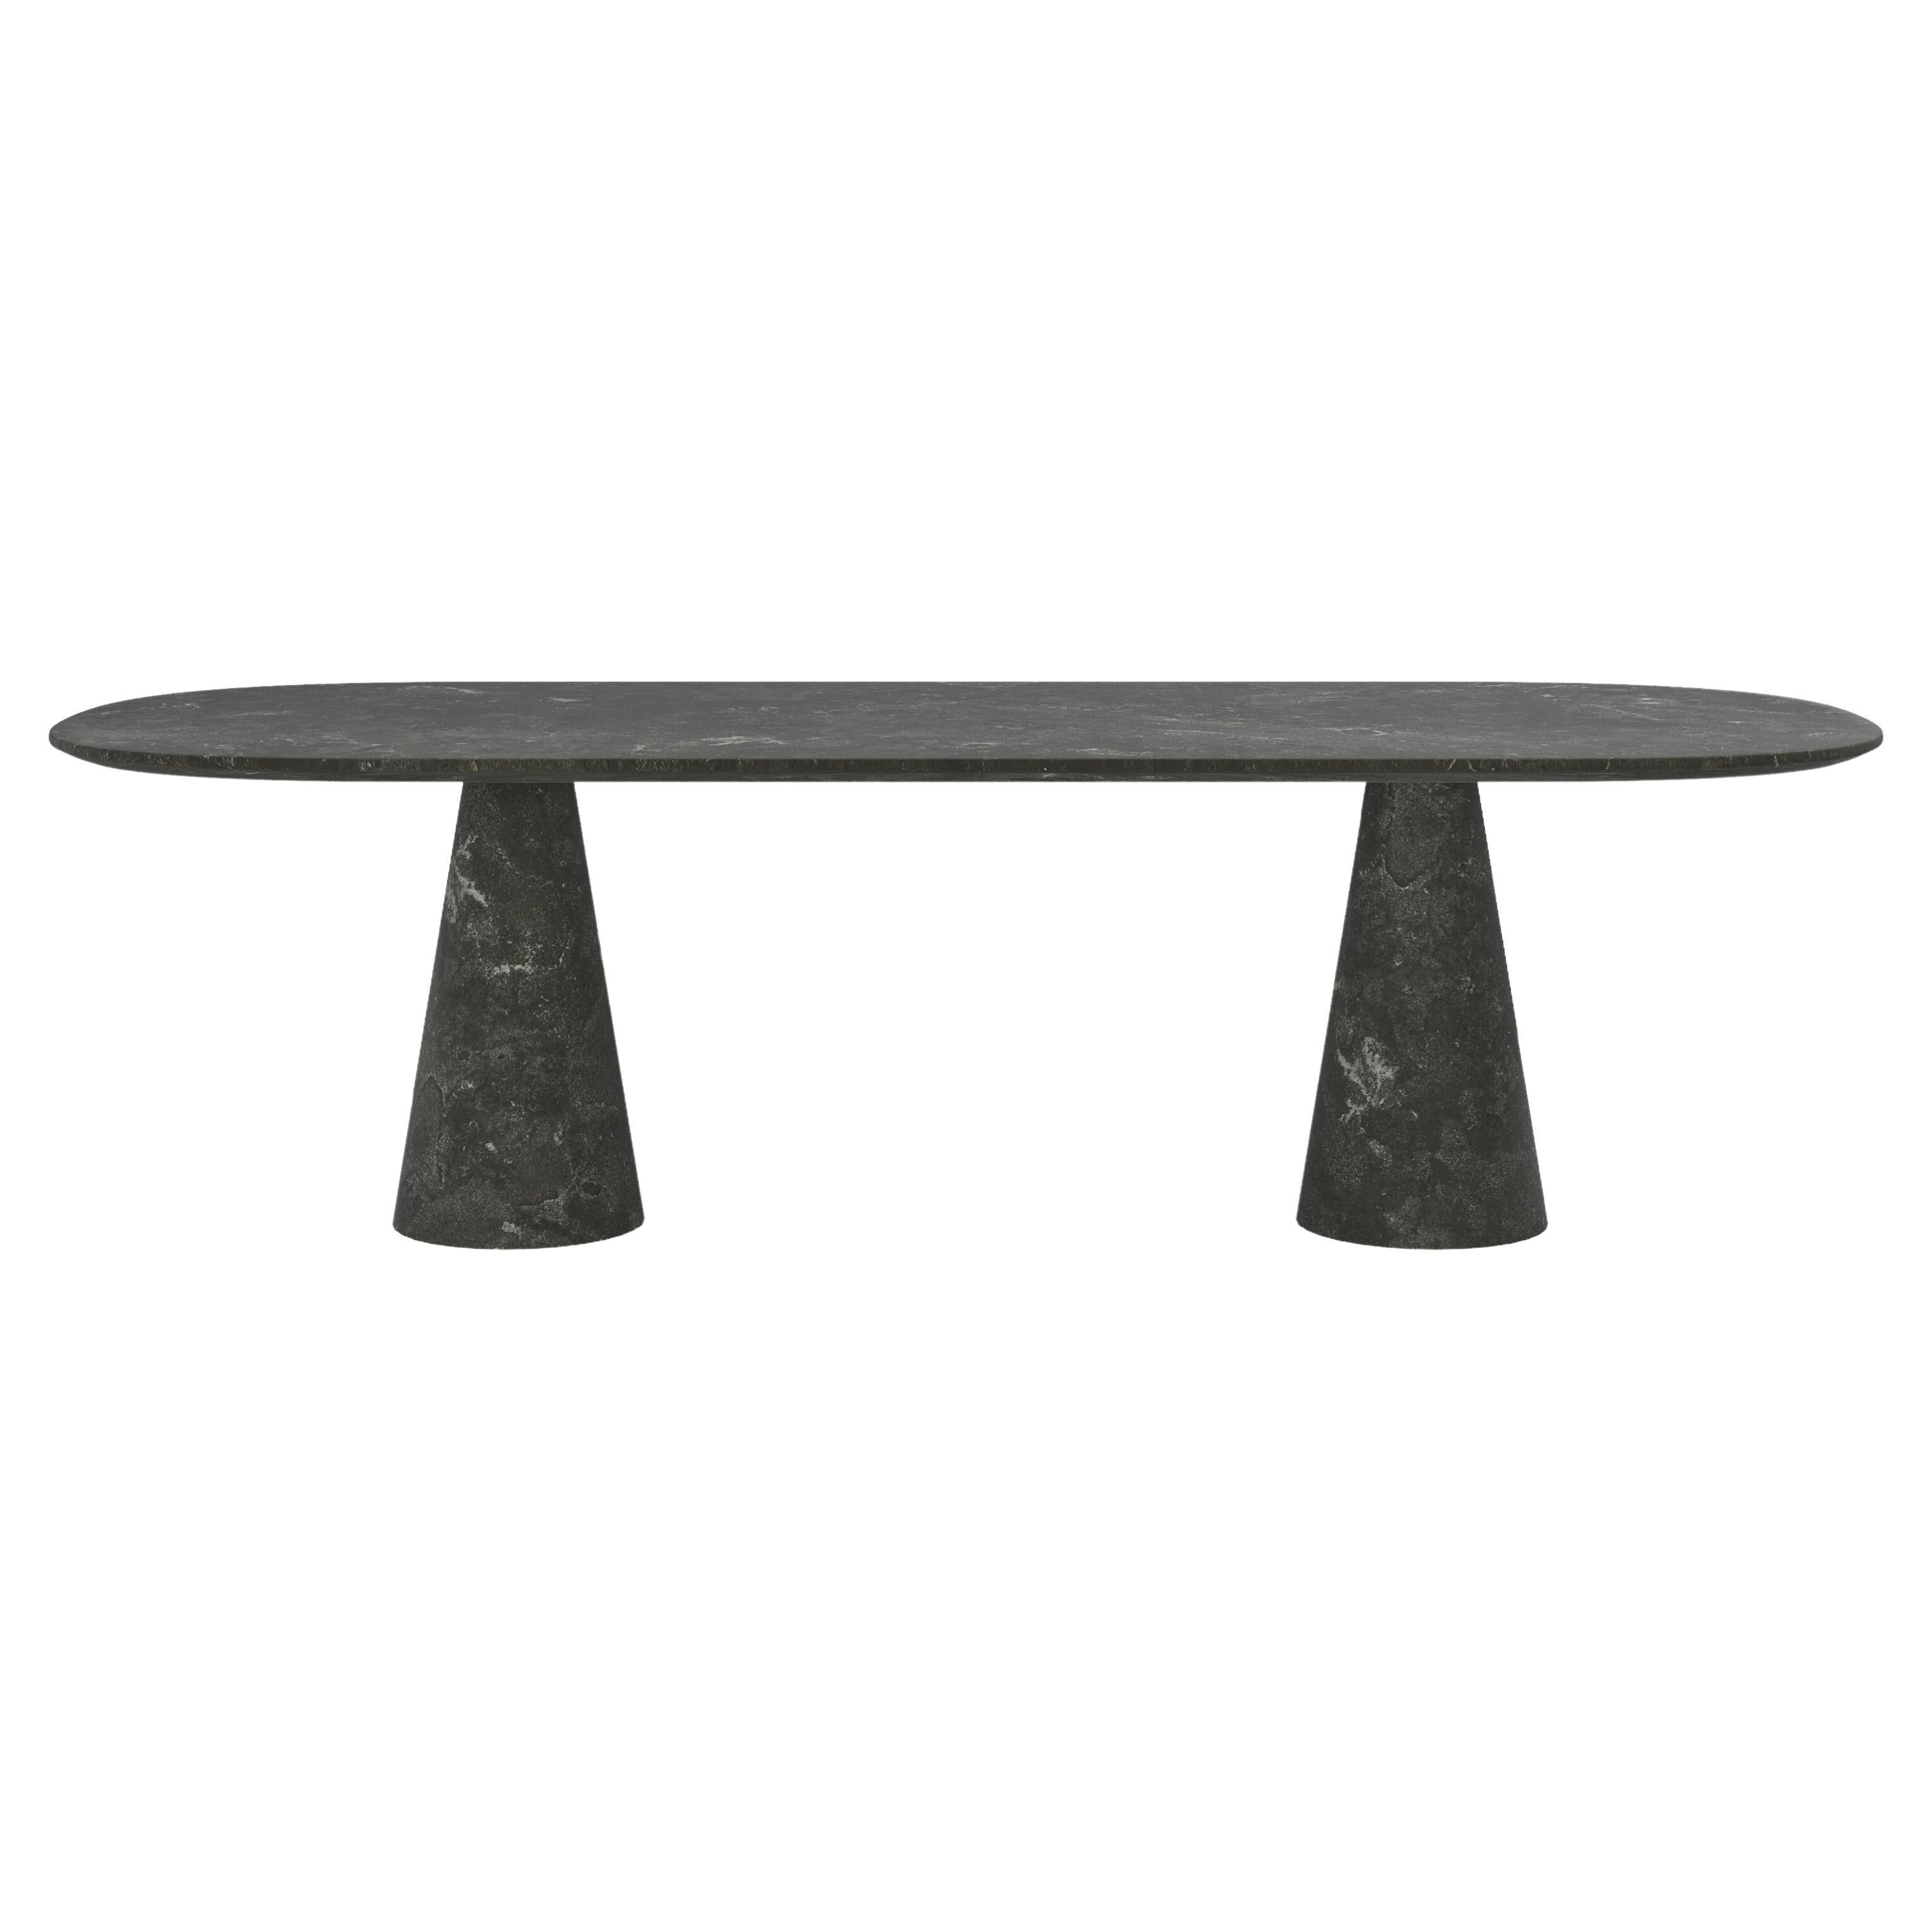 FORM(LA) Cono Oval Dining Table 96”L x 42”W x 30”H Nero Petite Granite